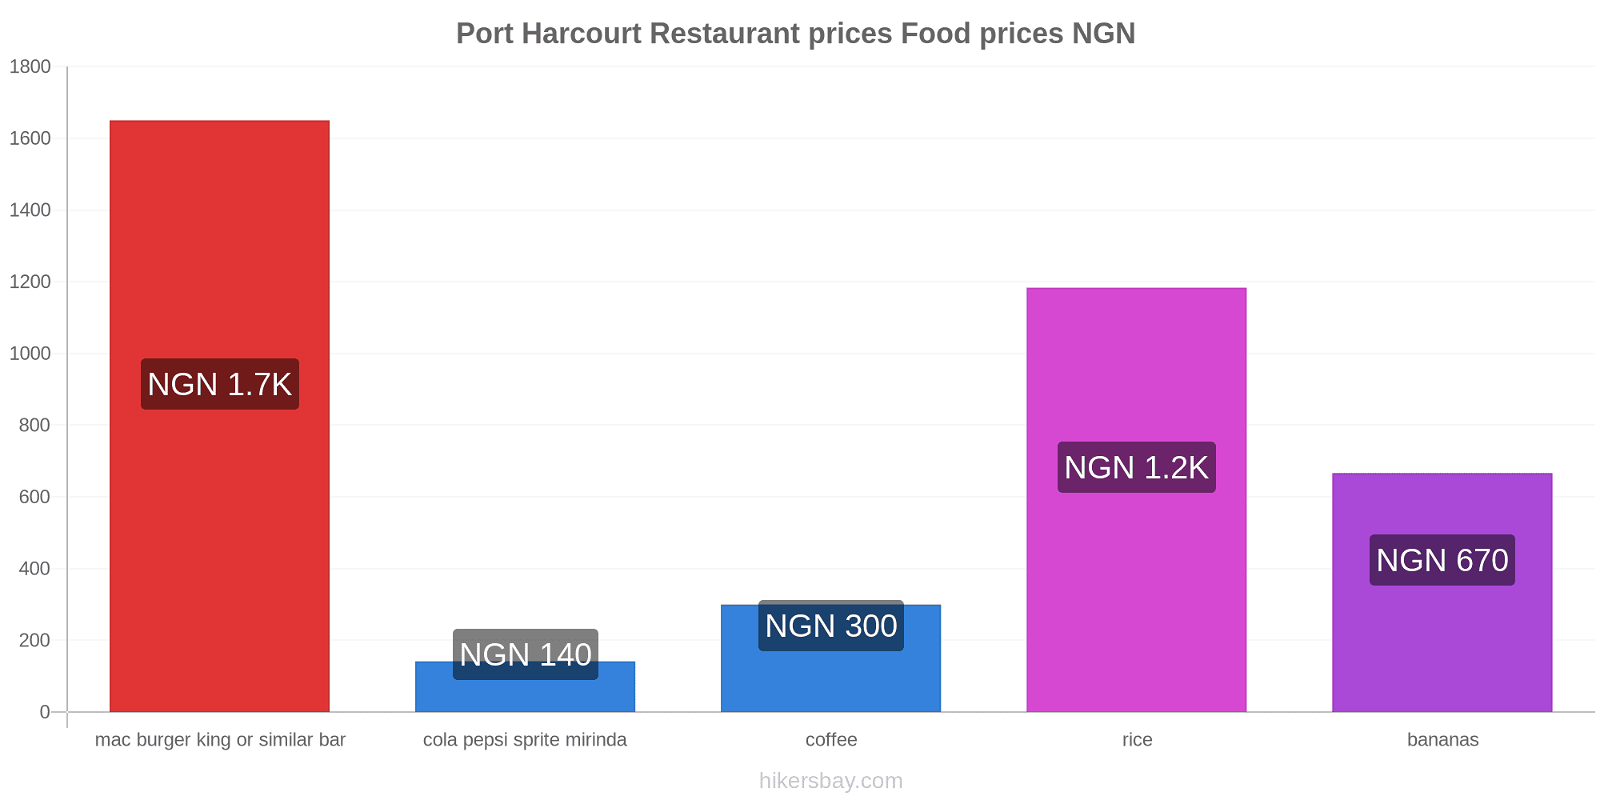 Port Harcourt price changes hikersbay.com